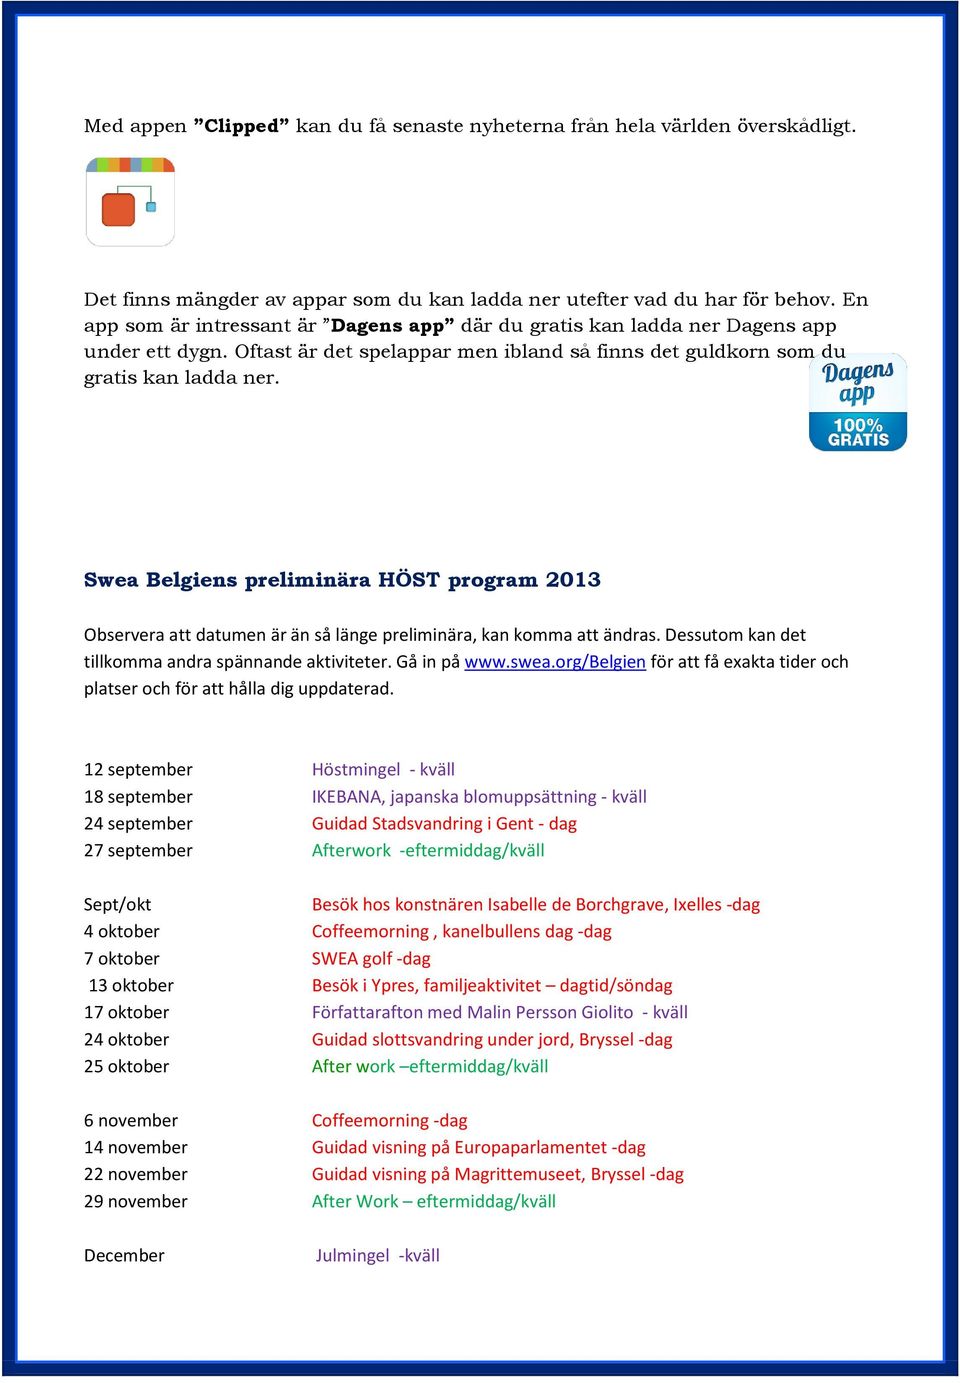 Swea Belgiens preliminära HÖST program 2013 Observera att datumen är än så länge preliminära, kan komma att ändras. Dessutom kan det tillkomma andra spännande aktiviteter. Gå in på www.swea.